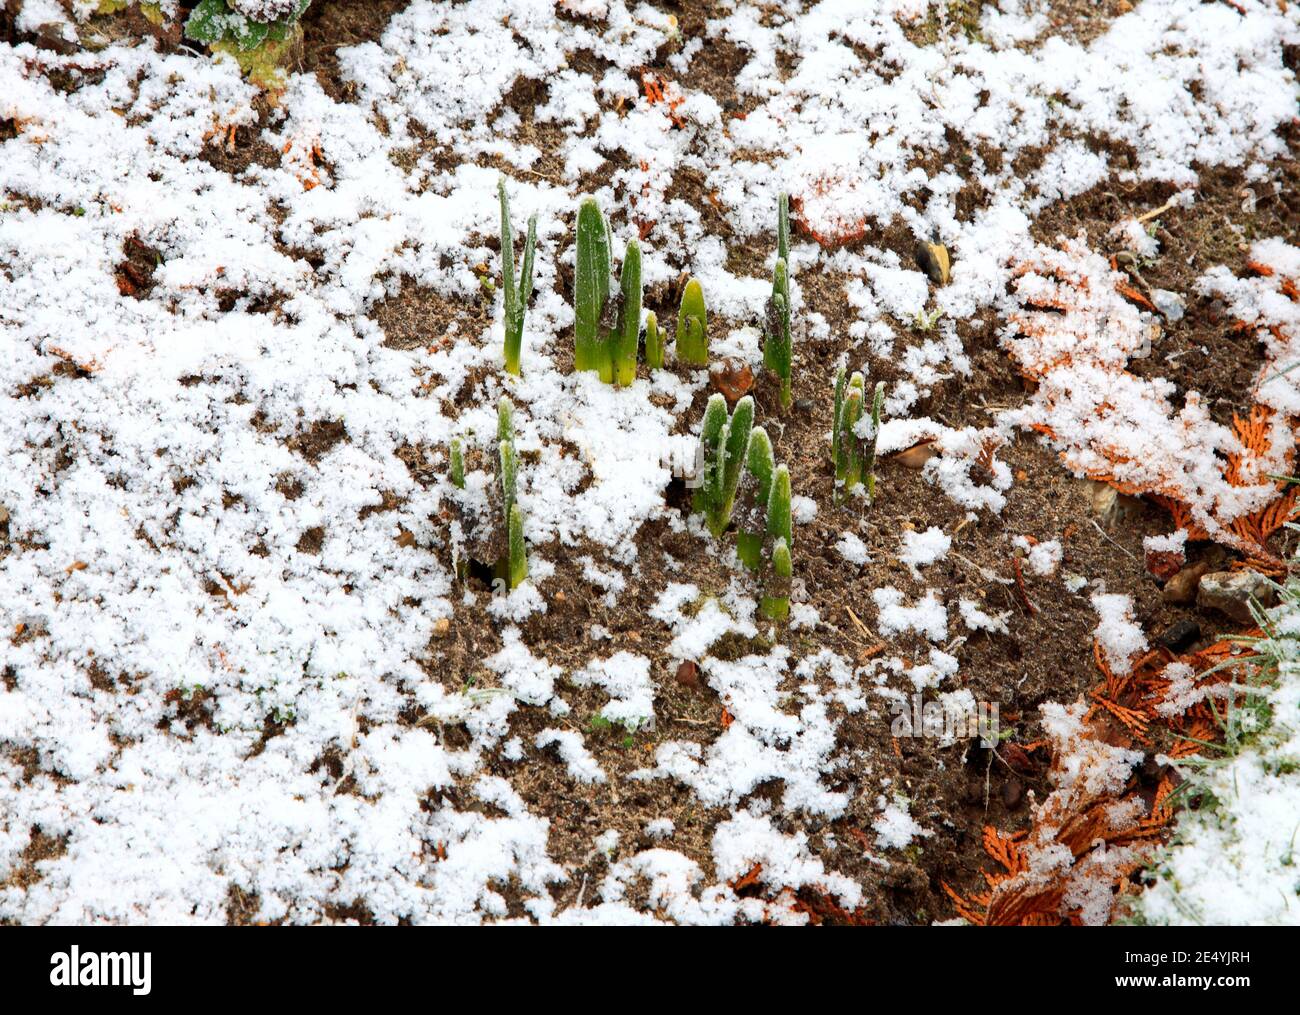 Les jonquilles se brisent avec des chutes de neige hivernales dans un jardin anglais à Hellesdon, Norfolk, Angleterre, Royaume-Uni. Banque D'Images